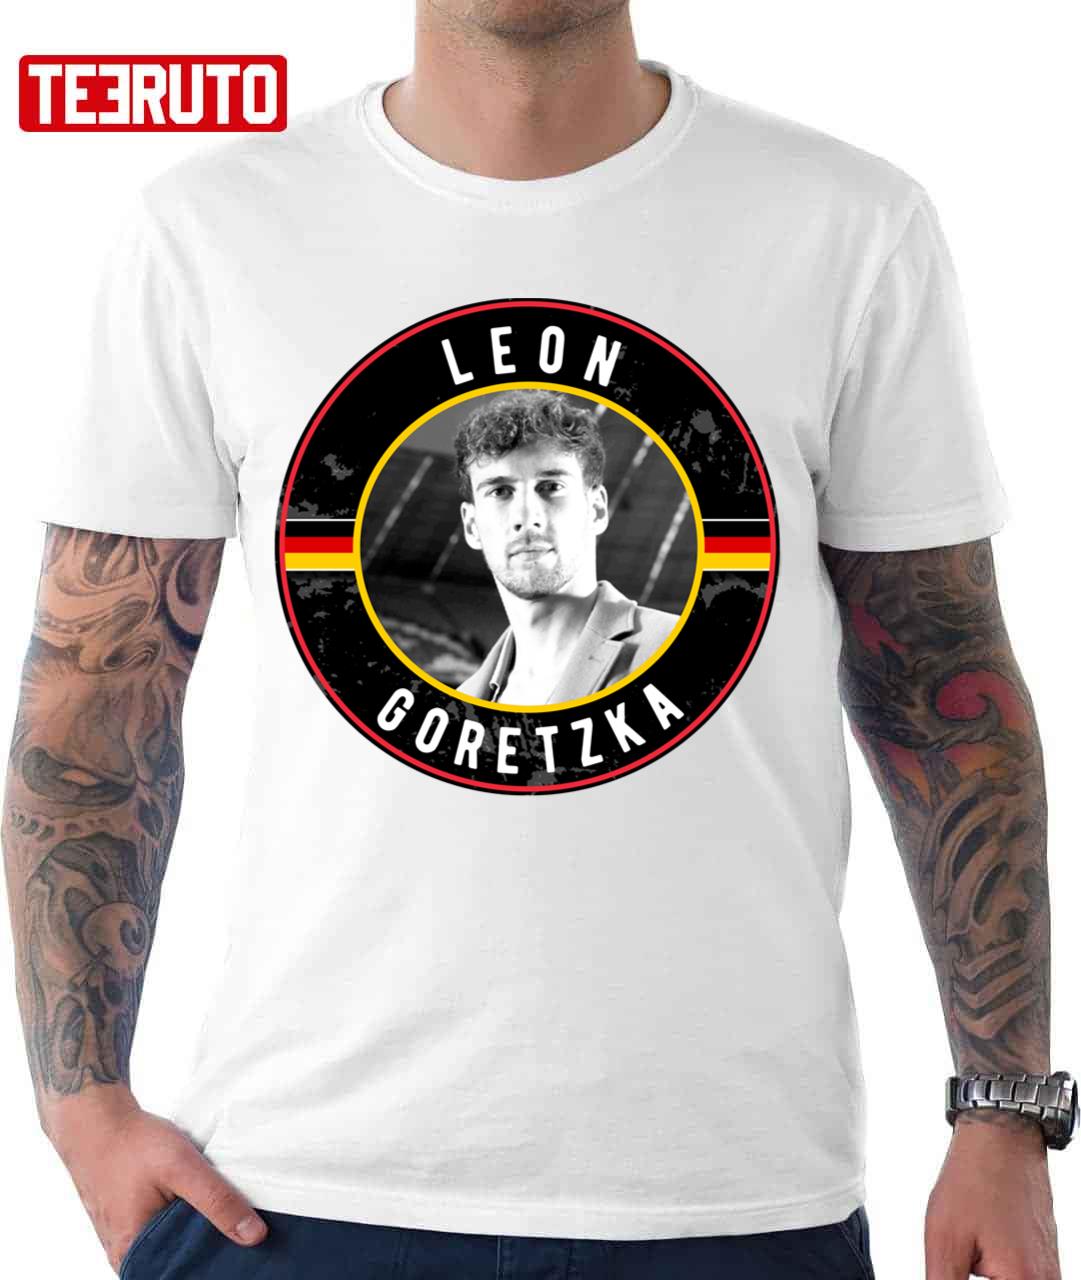 Leon Goretzka Football Graphic Unisex T-Shirt